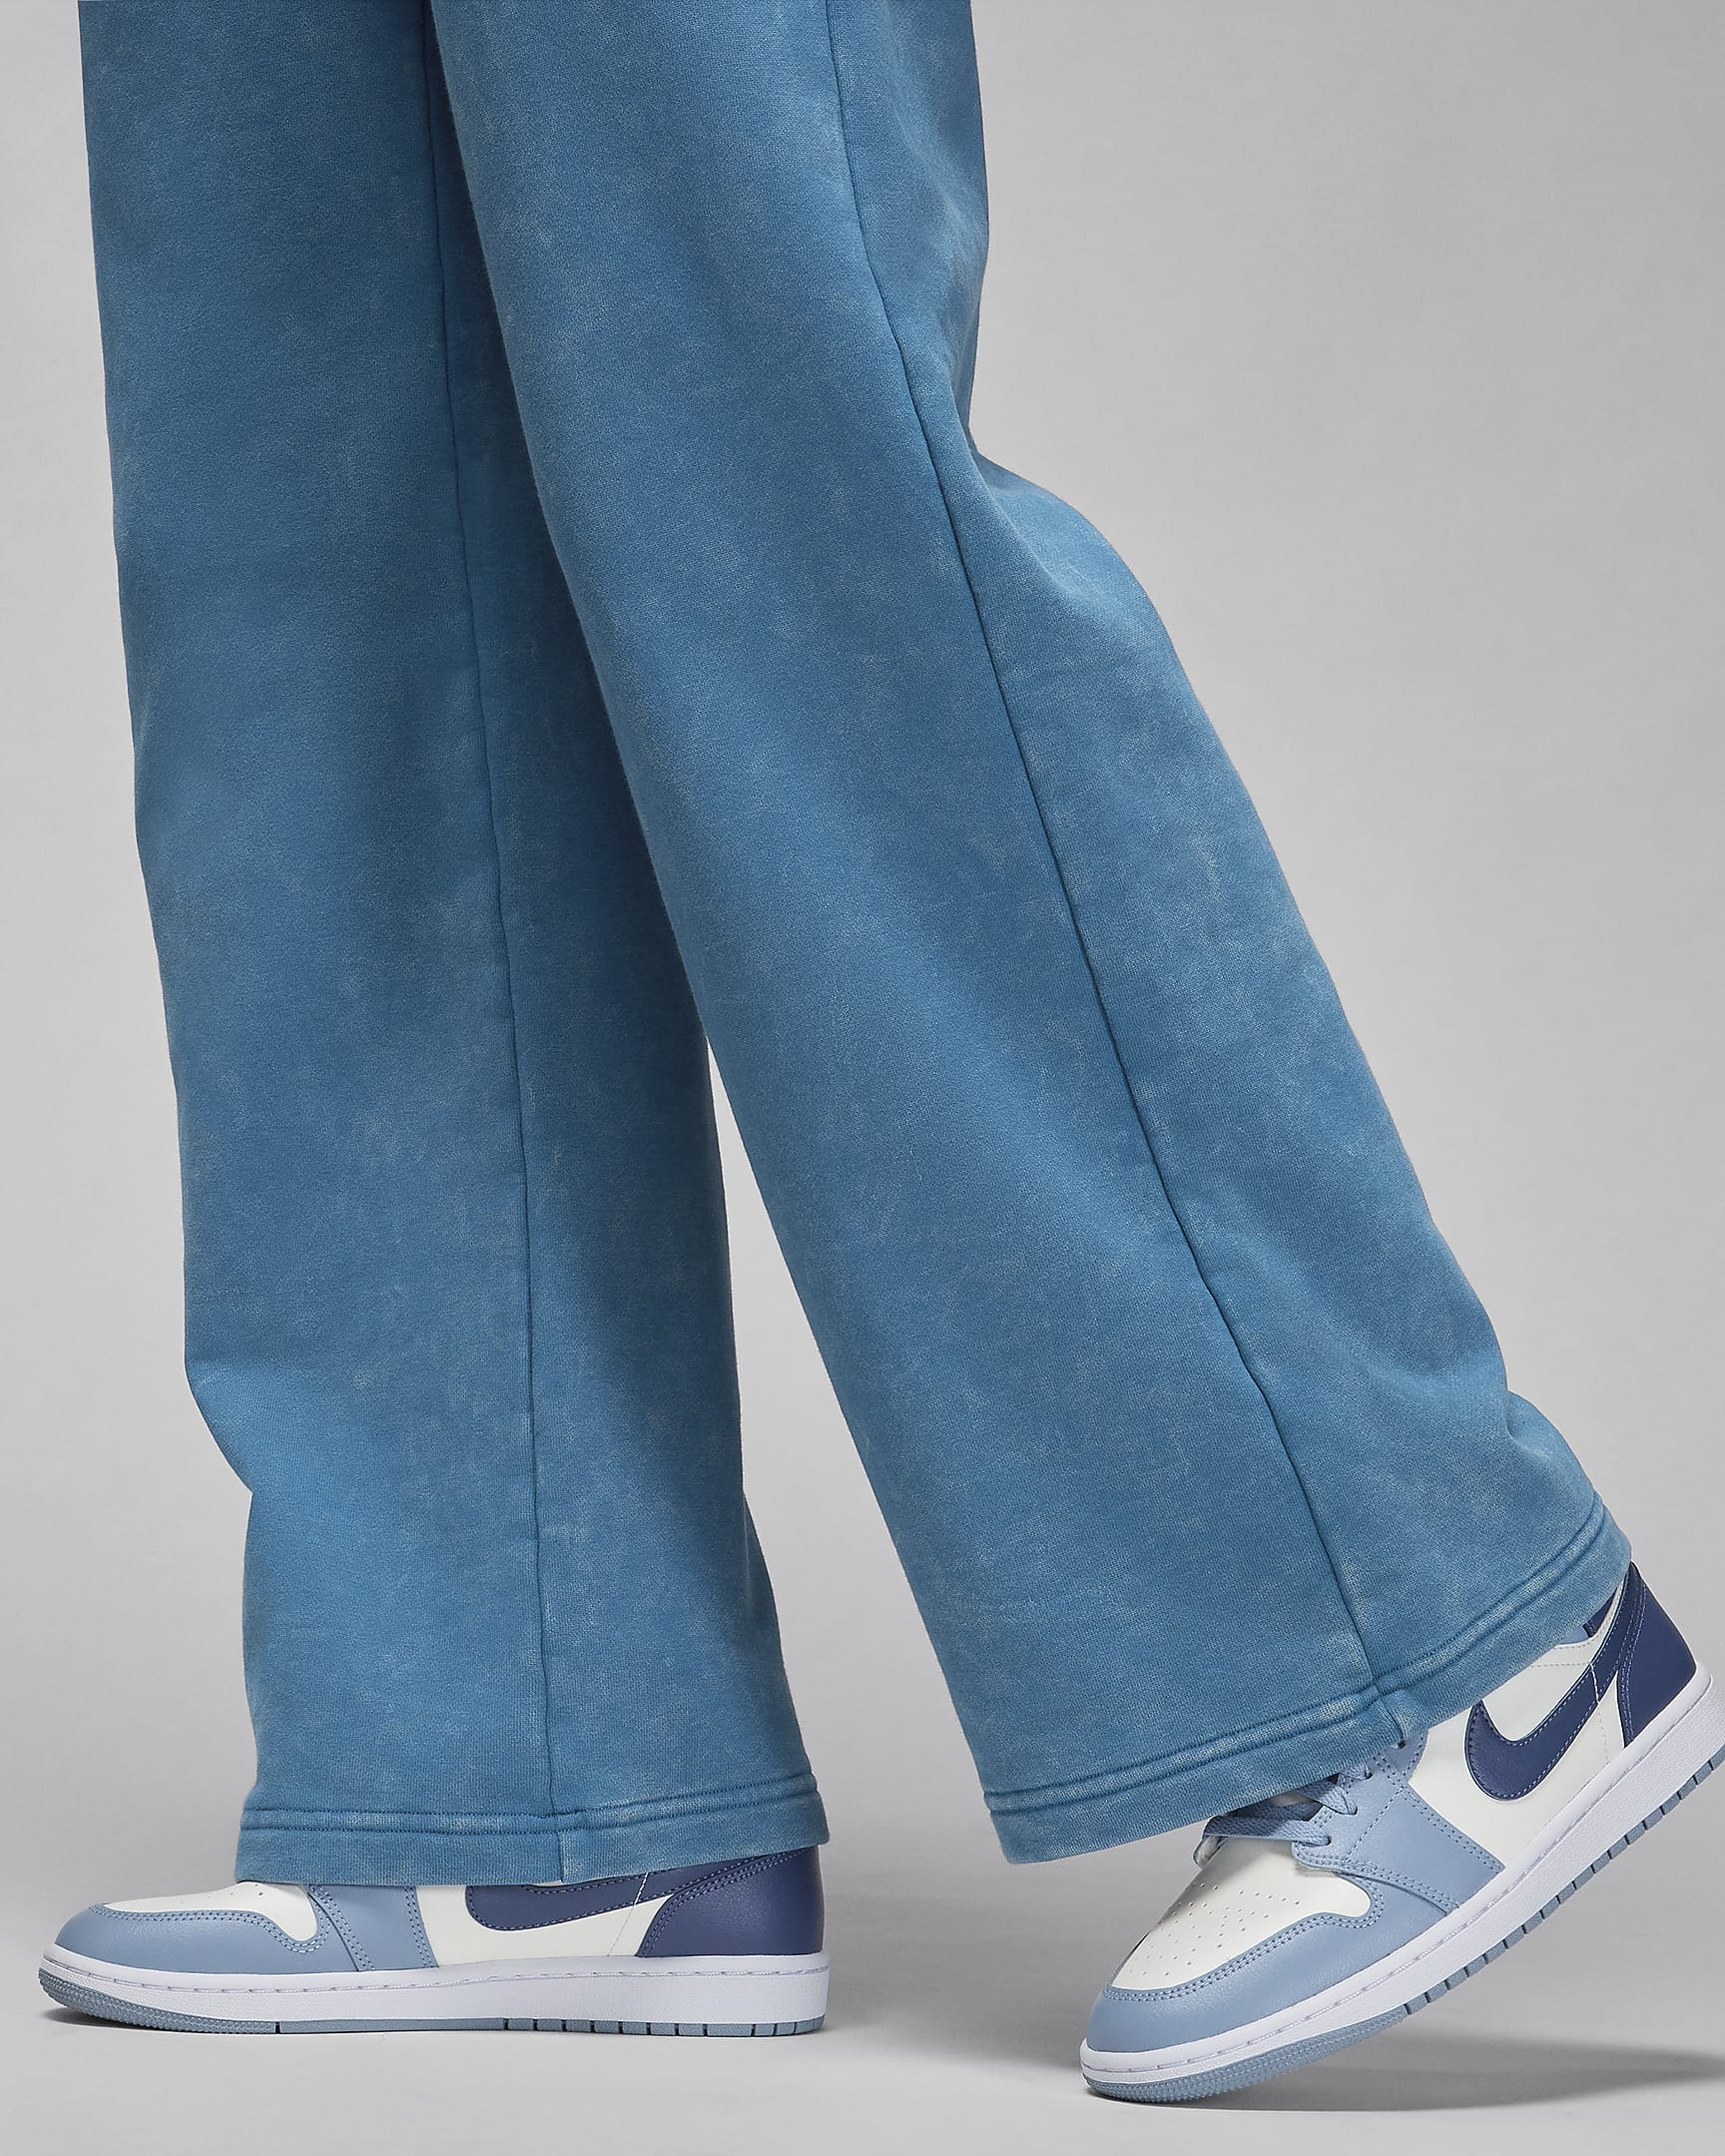 Jordan Flight Fleece Women's Open-Hem Trousers - Industrial Blue